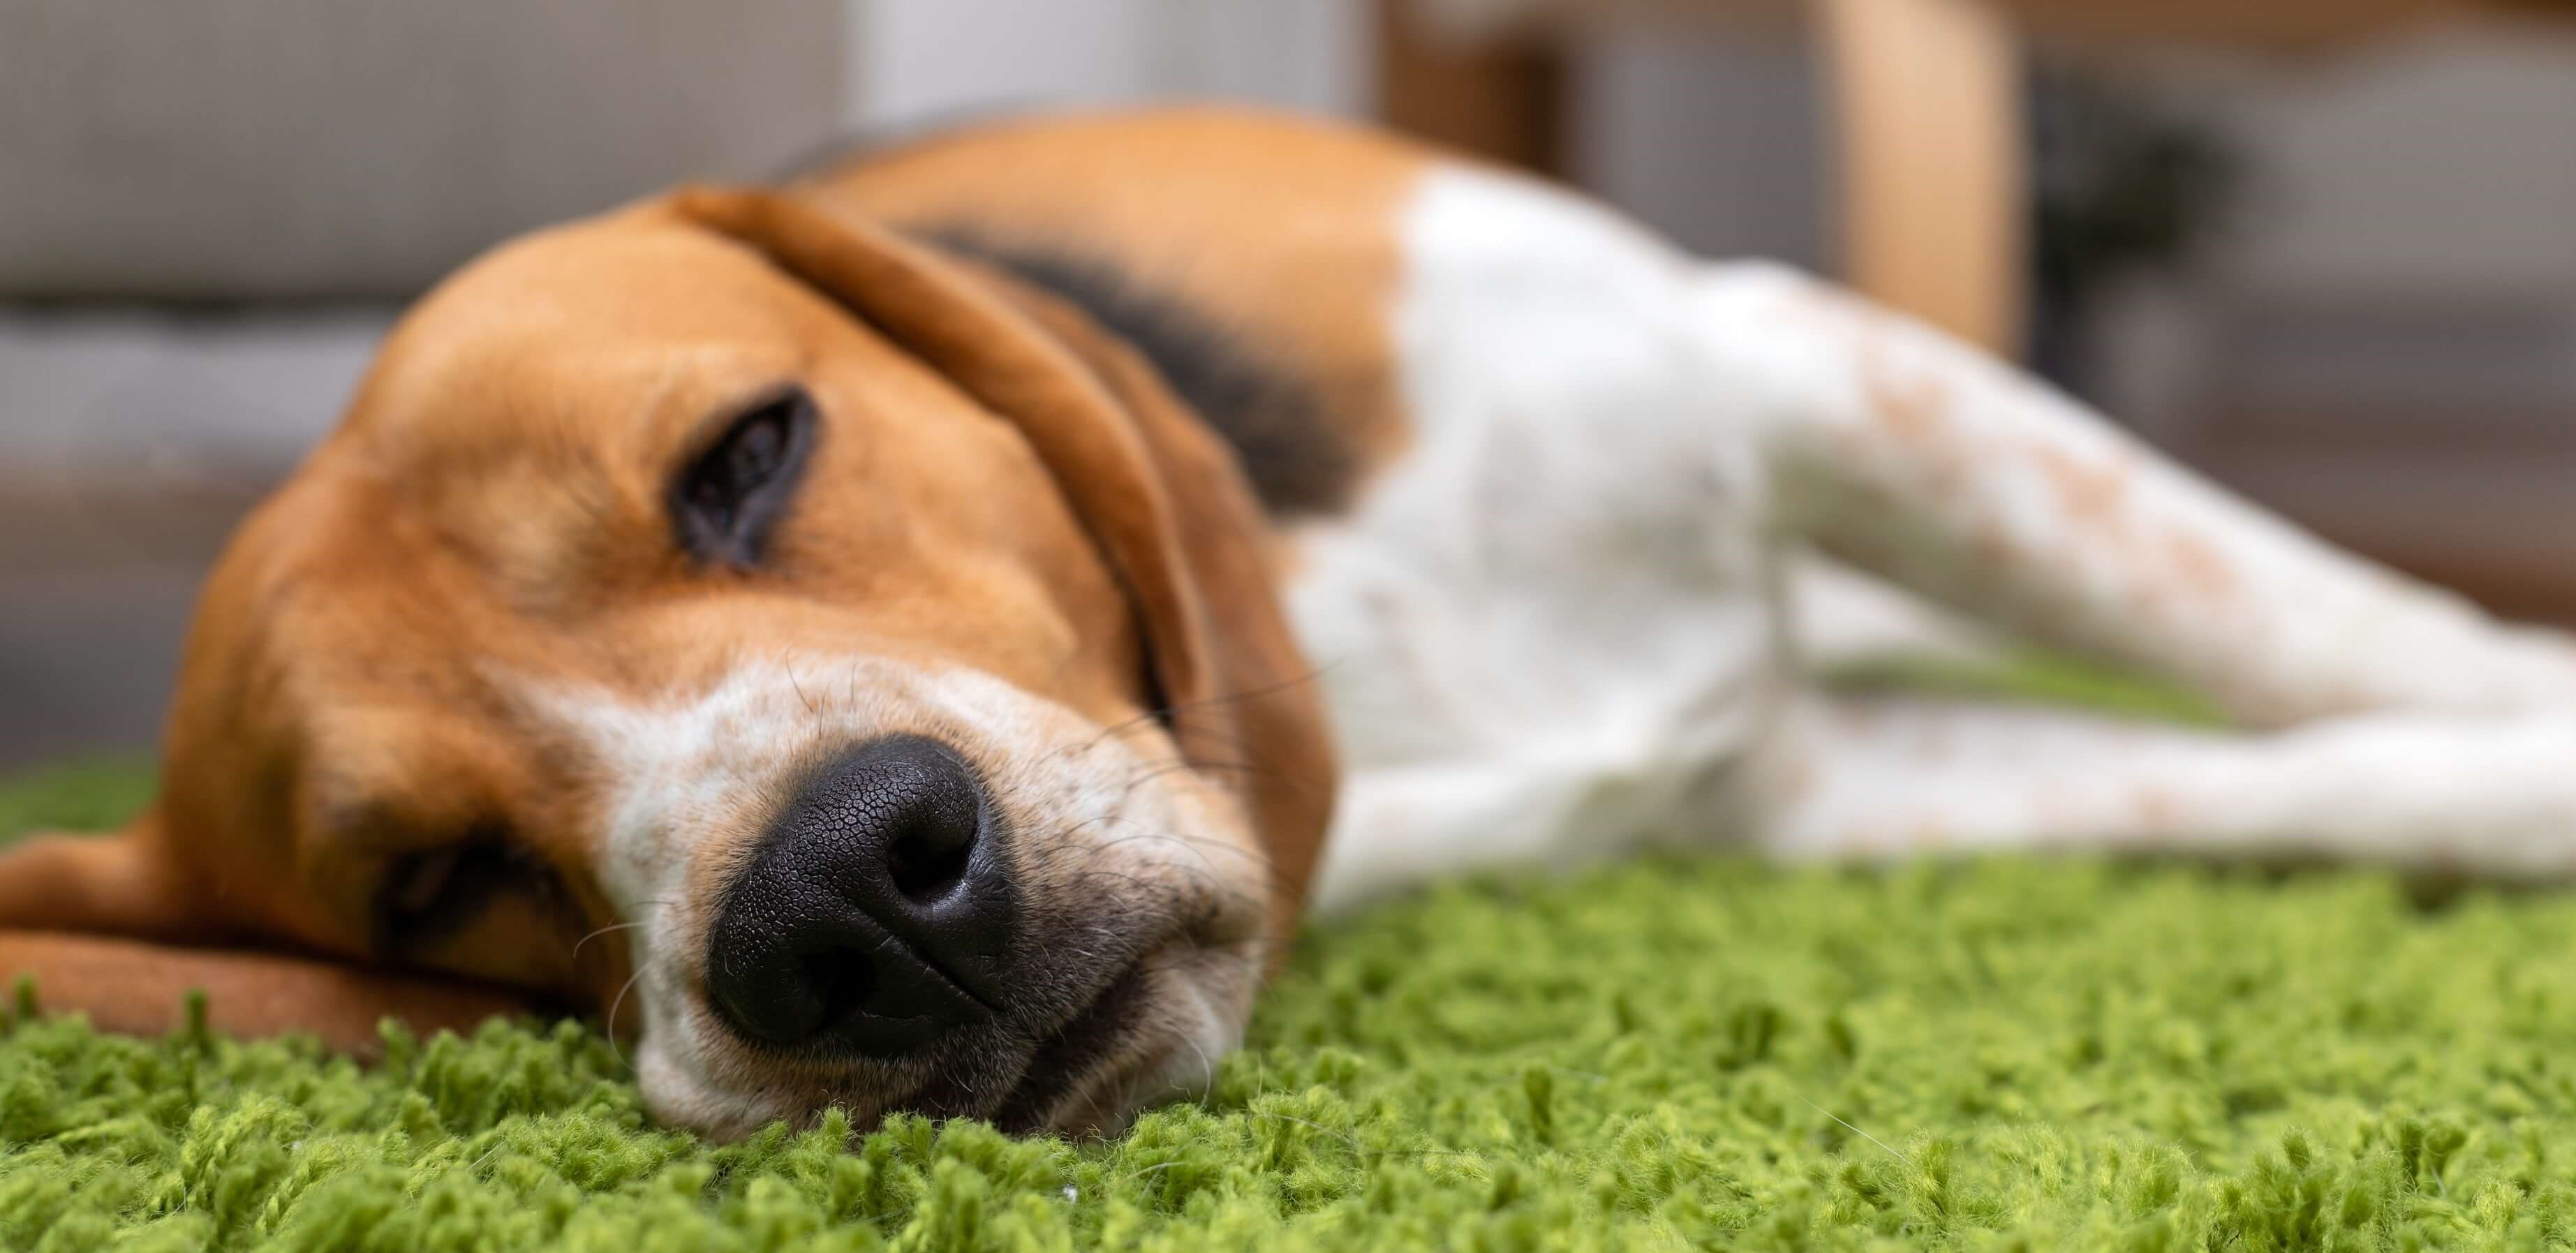 Najważniejsze informacje o parwowirozie - sprawdź, jak możesz pomóc psu